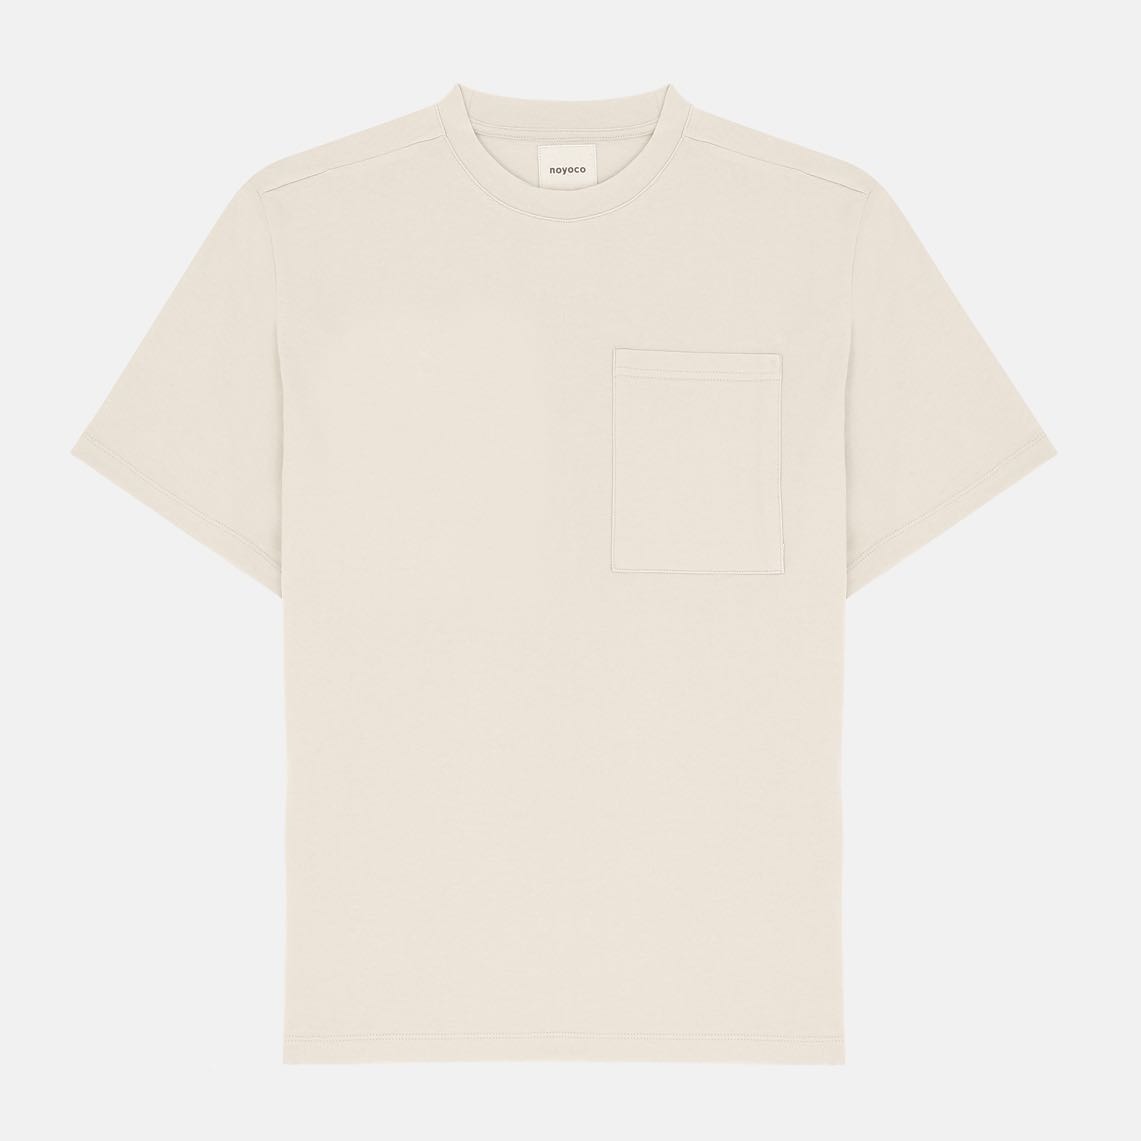 t-shirt blanc noyoco oversize gumi